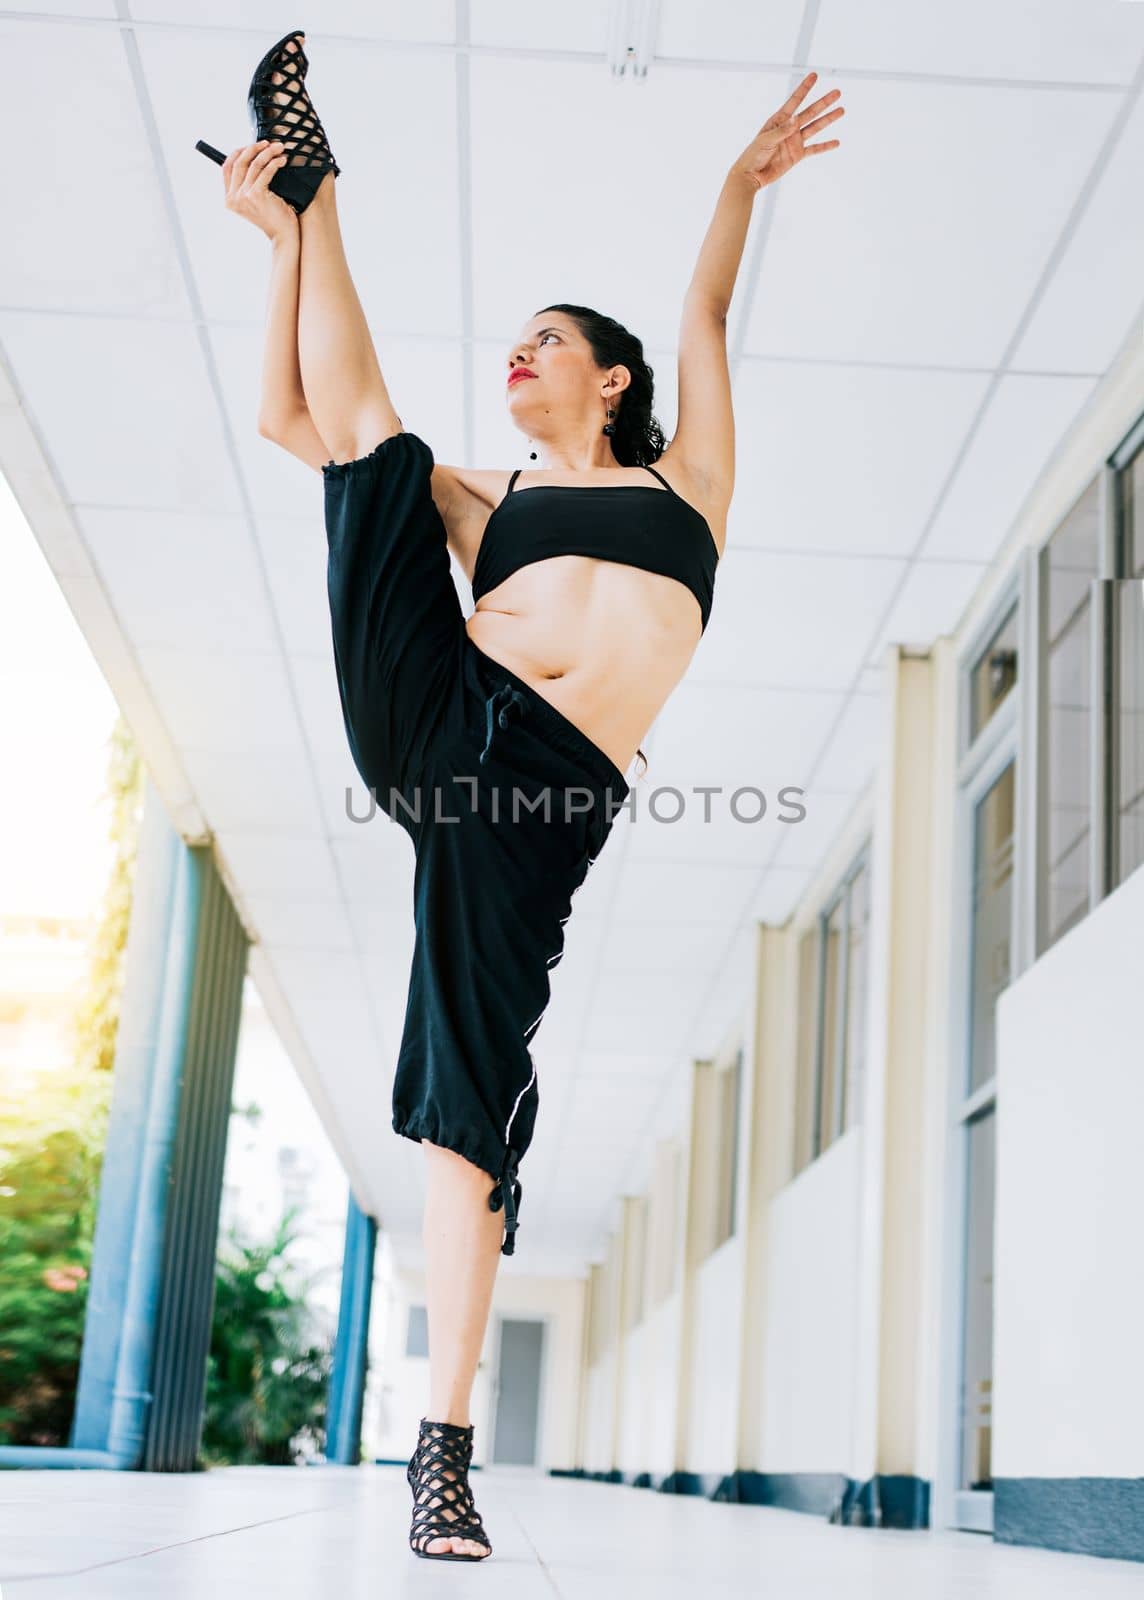 Dance girl doing flexibility in high heels. Woman dancer in heels doing yoga flexibilities. Dance artist woman doing acrobatics and flexibilities in heels. Artistic gymnastics concept